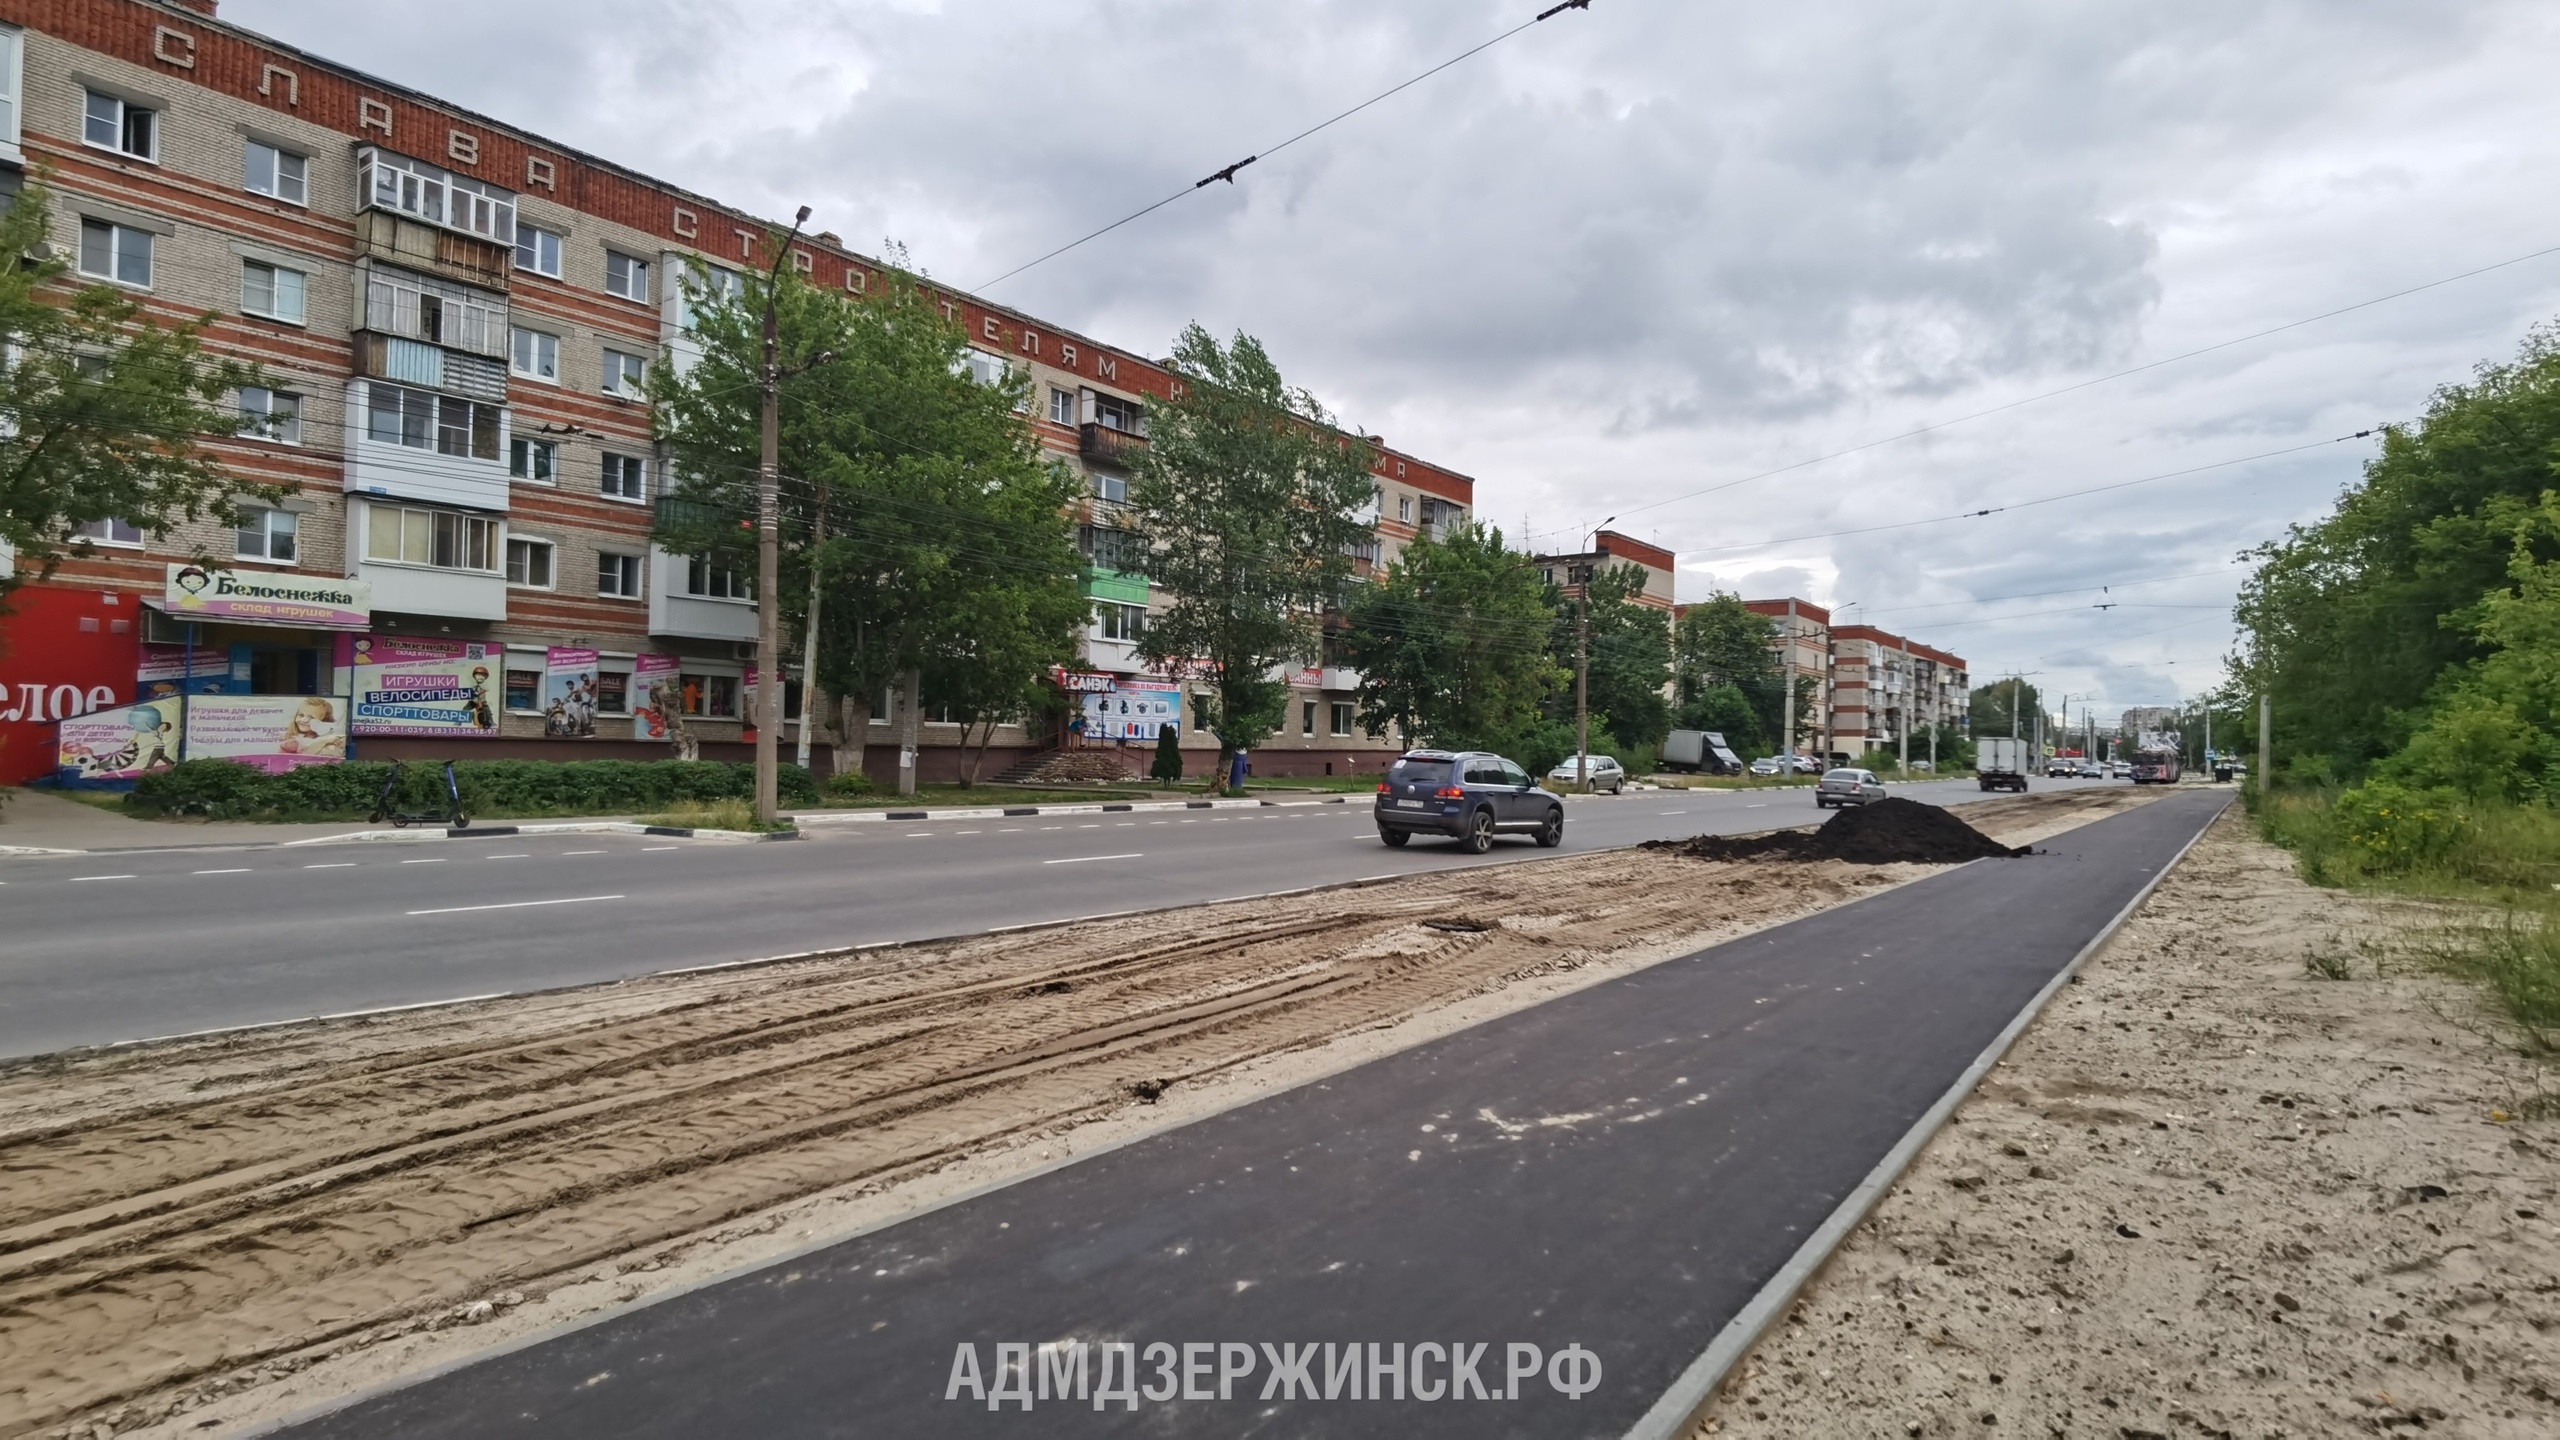 Строительство восьмикилометровой велодорожки стартовало в Дзержинске - фото 1